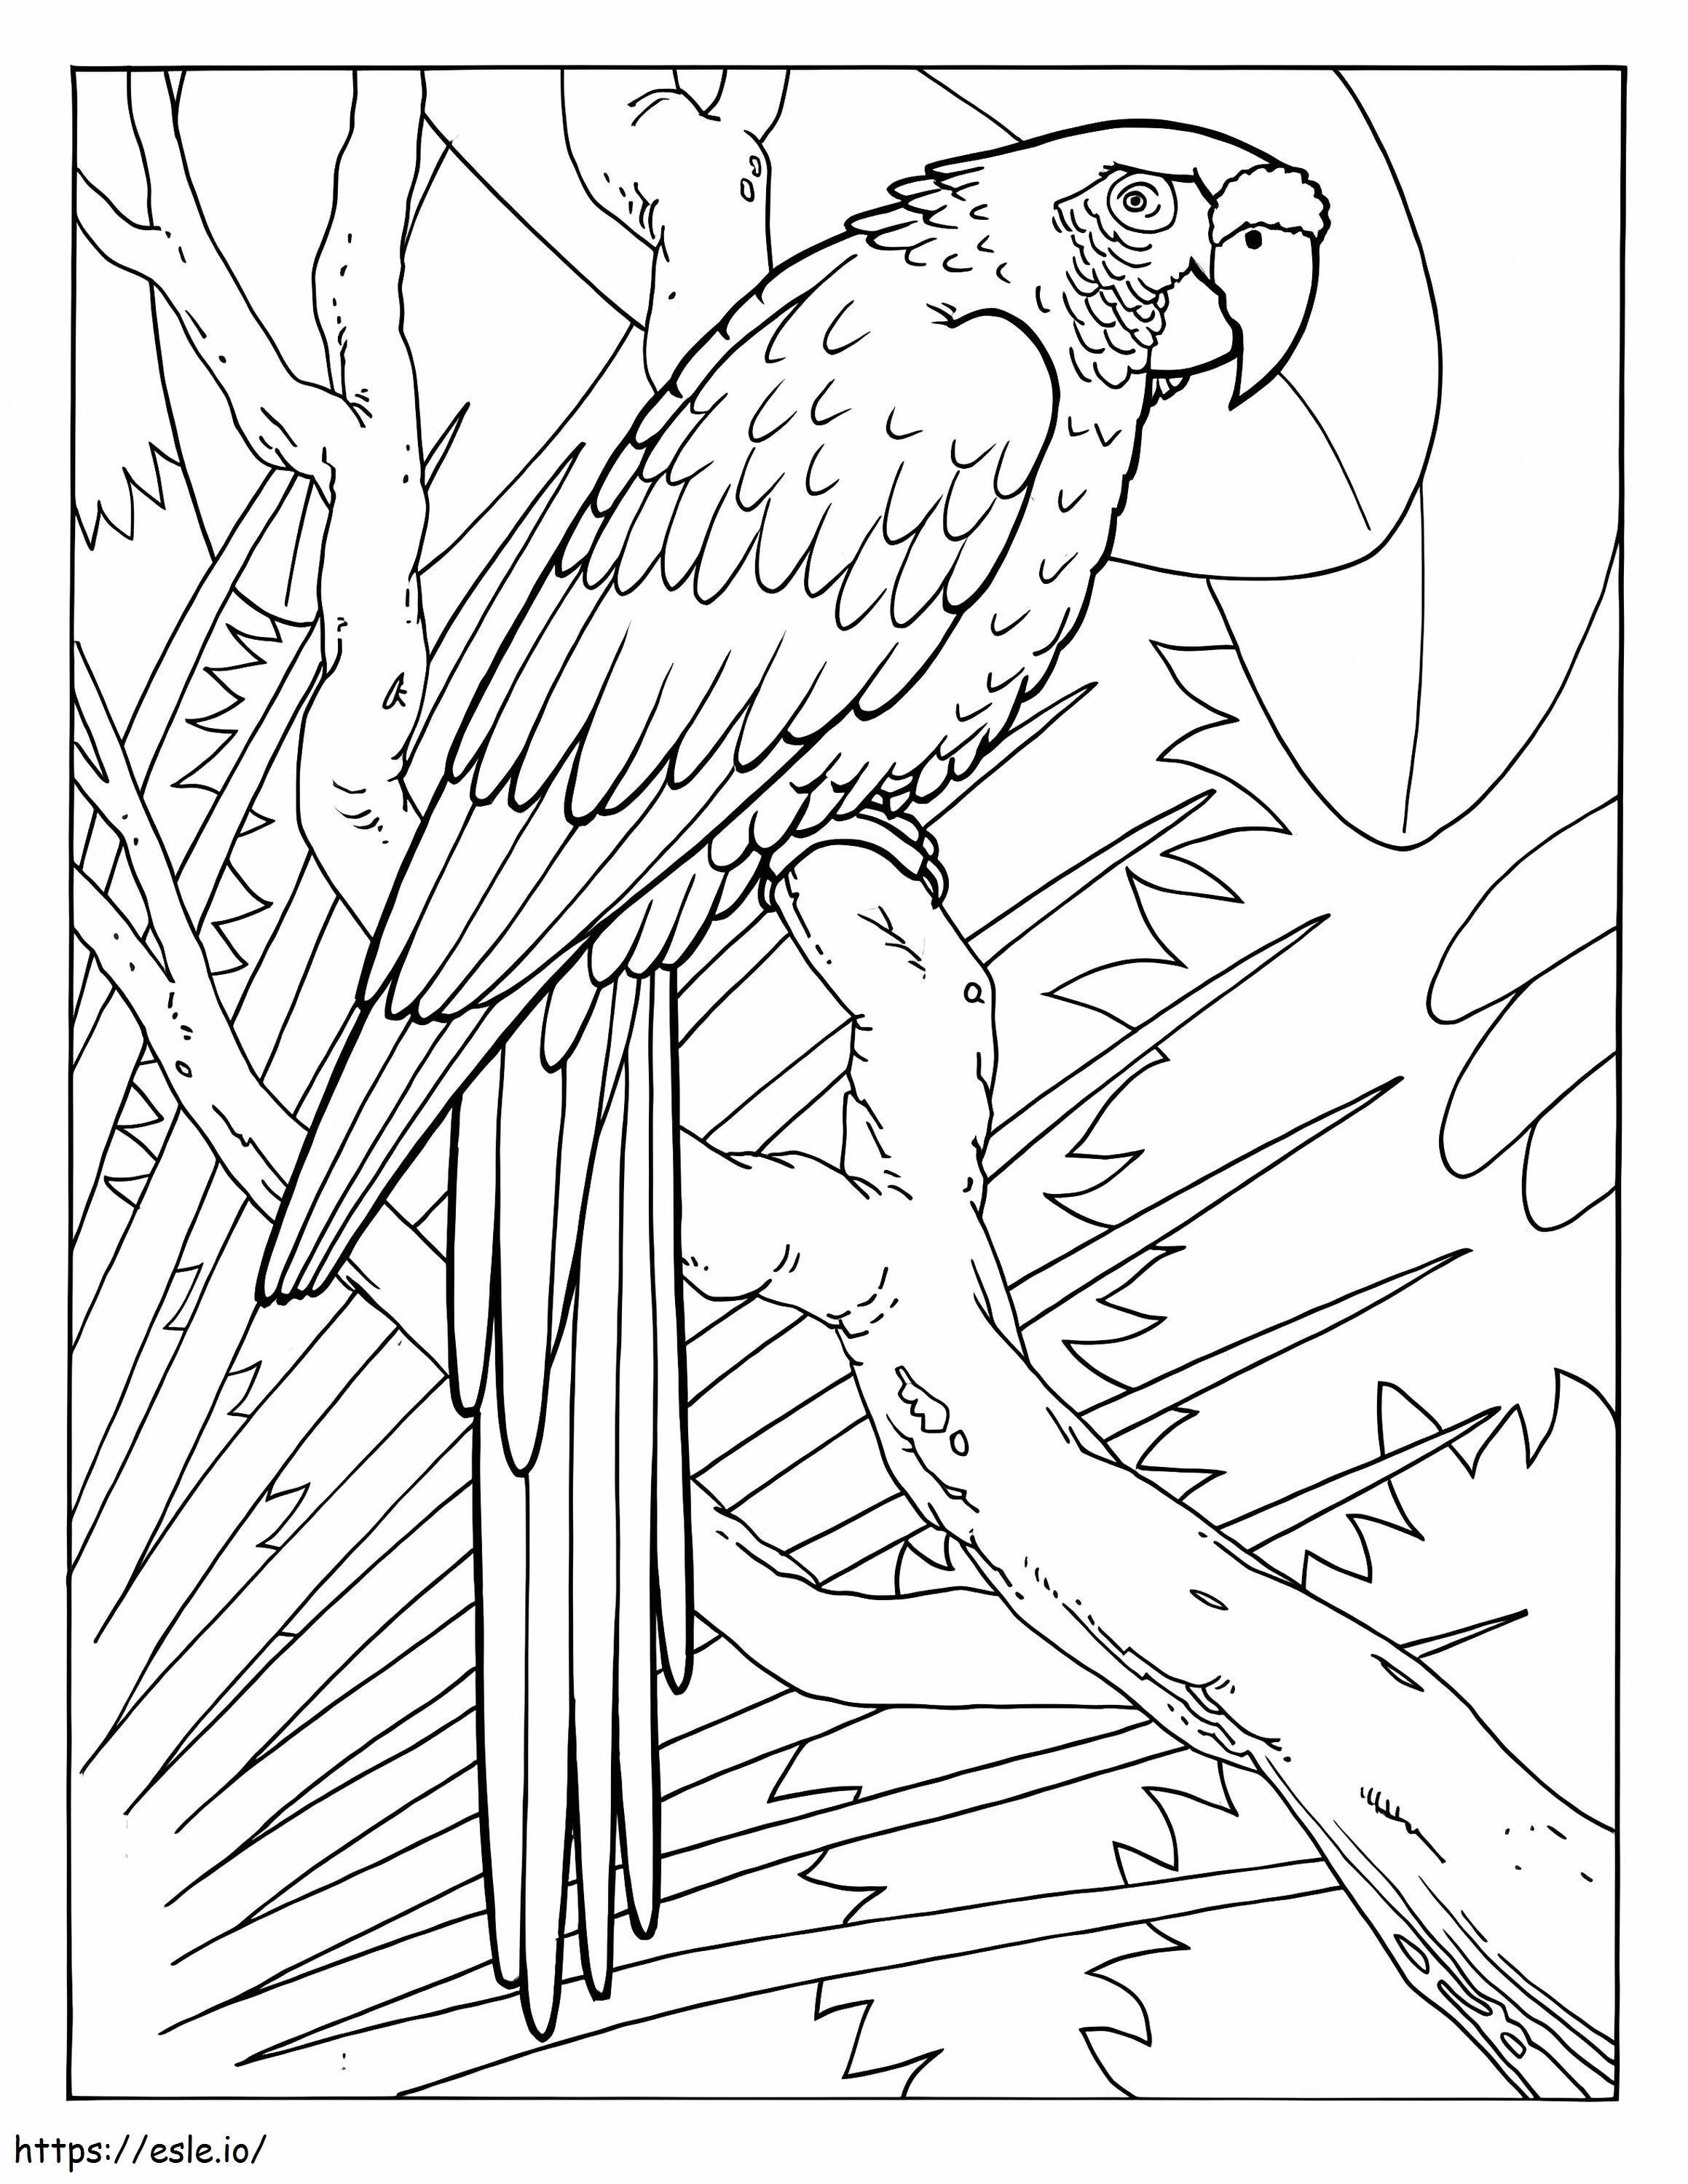 Macaw Sederhana Gambar Mewarnai